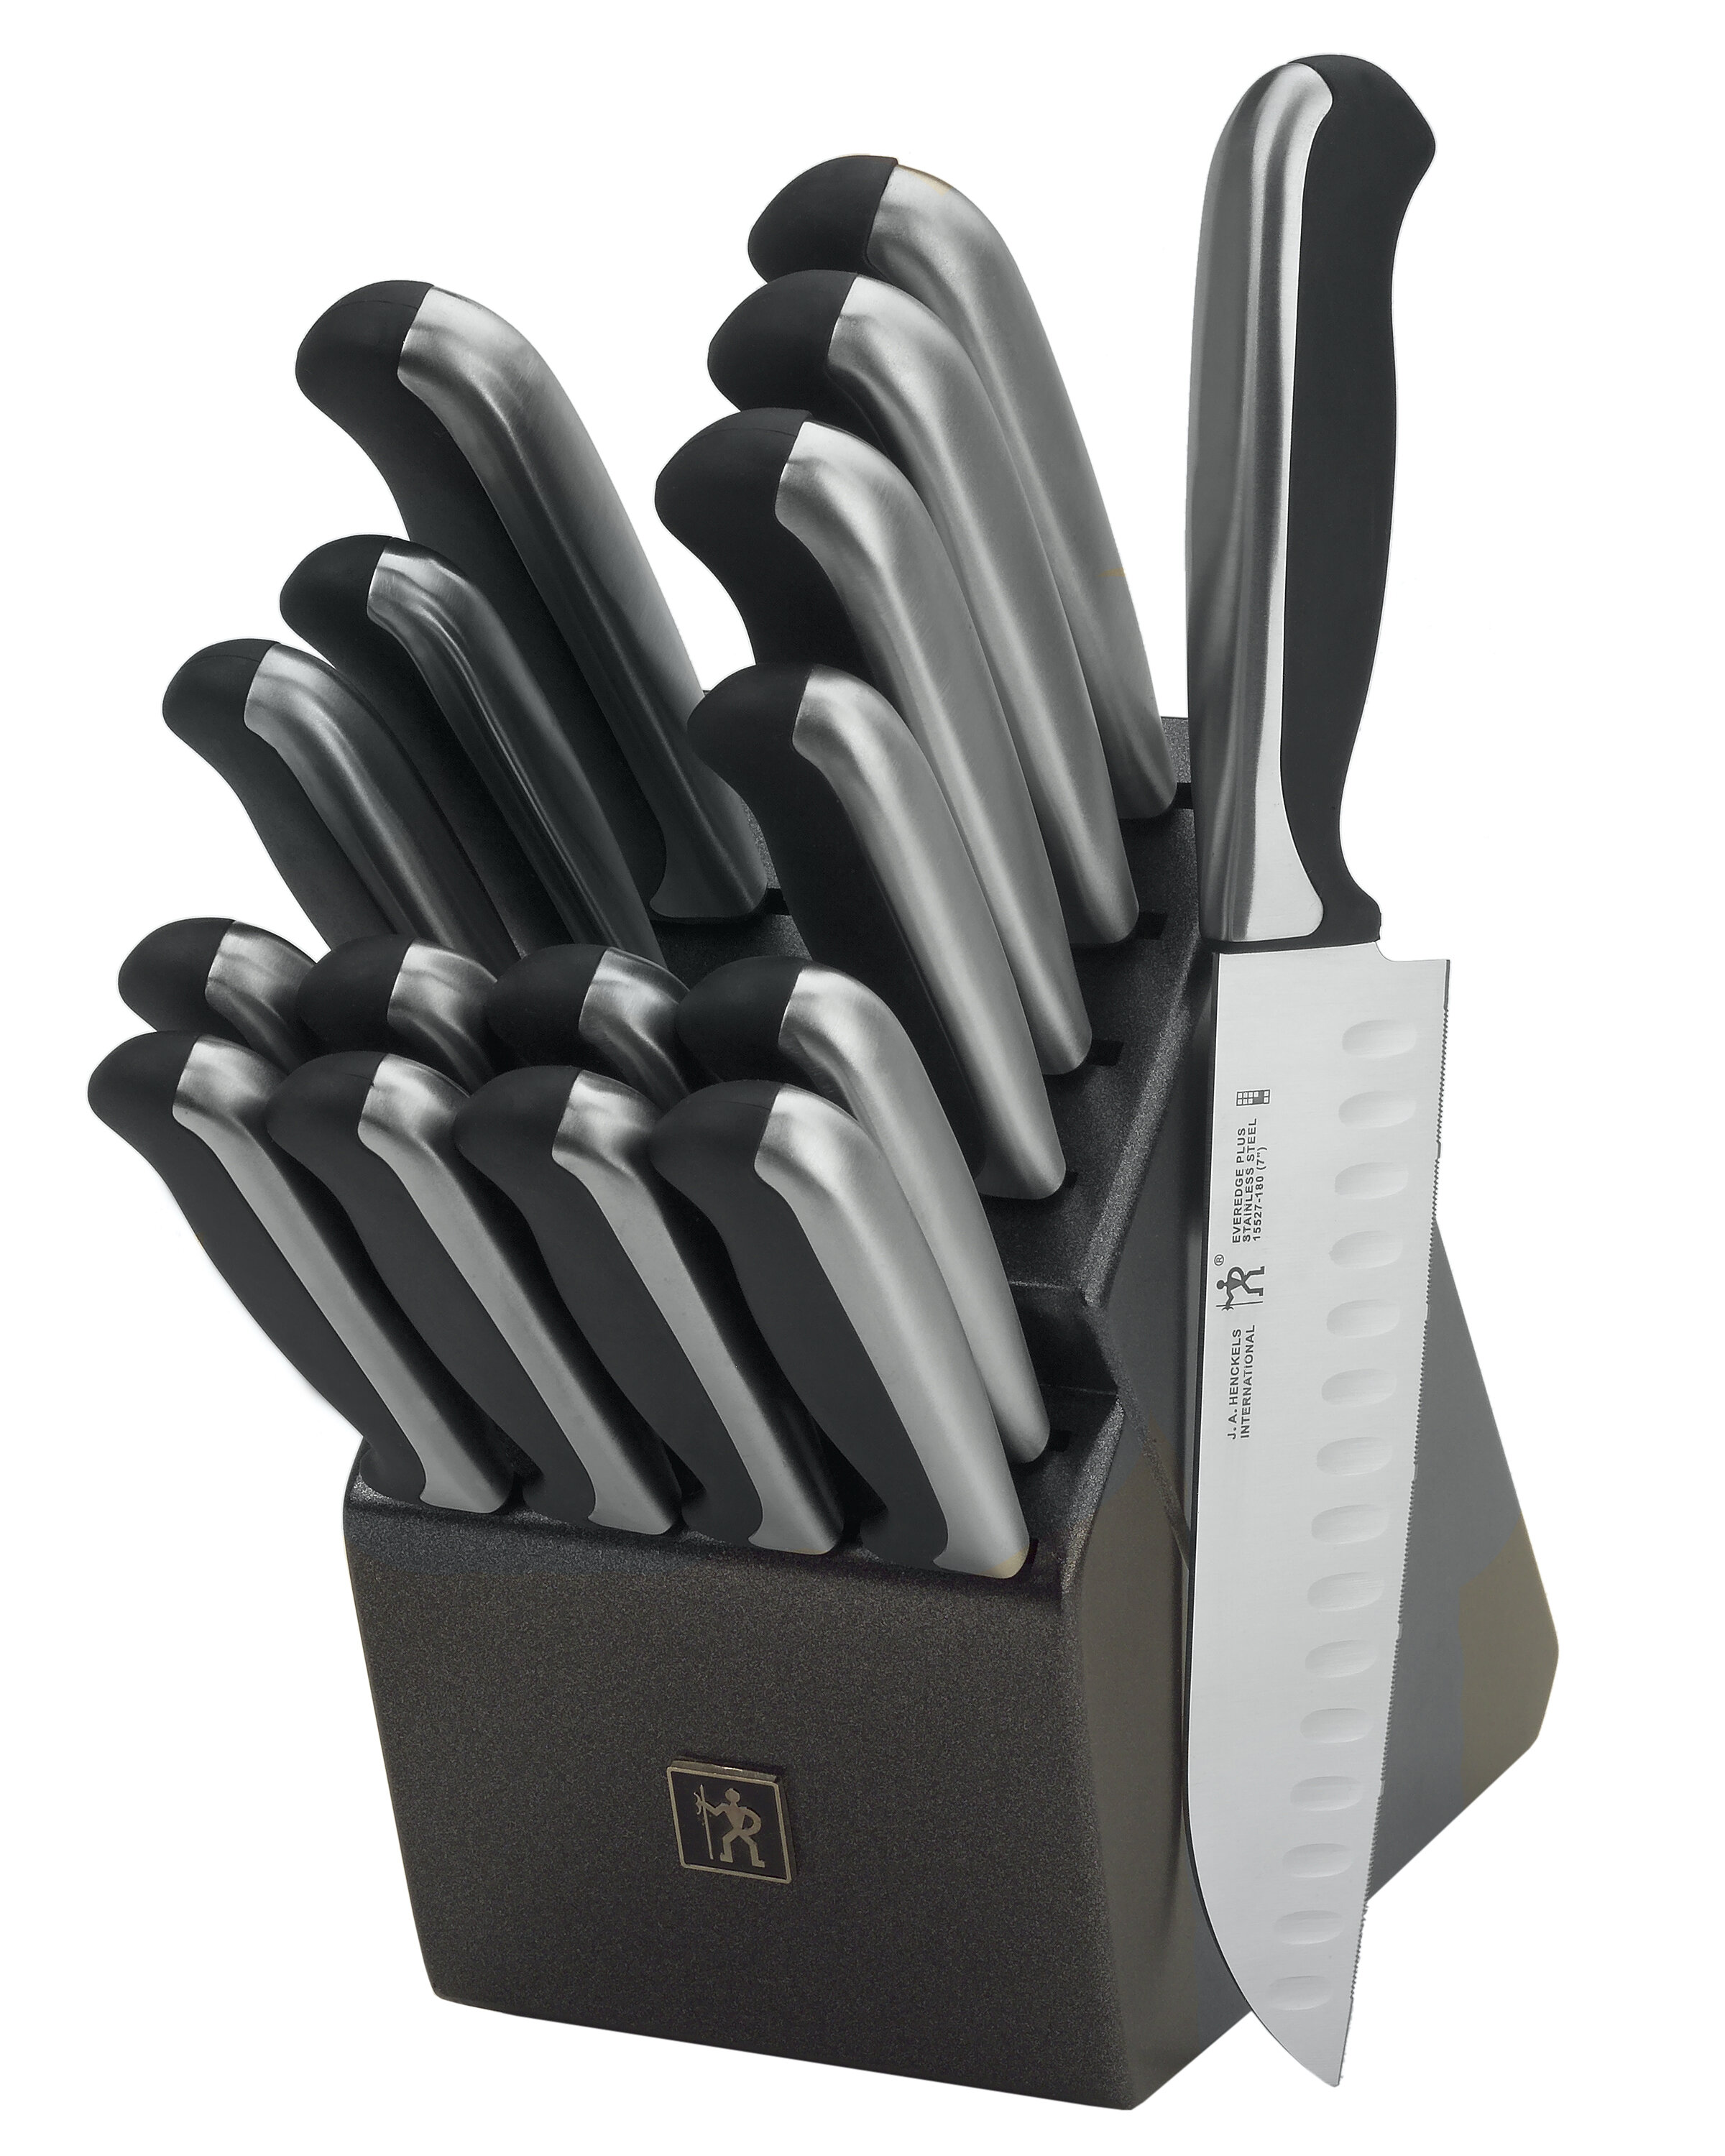 henckels knife sets on sale